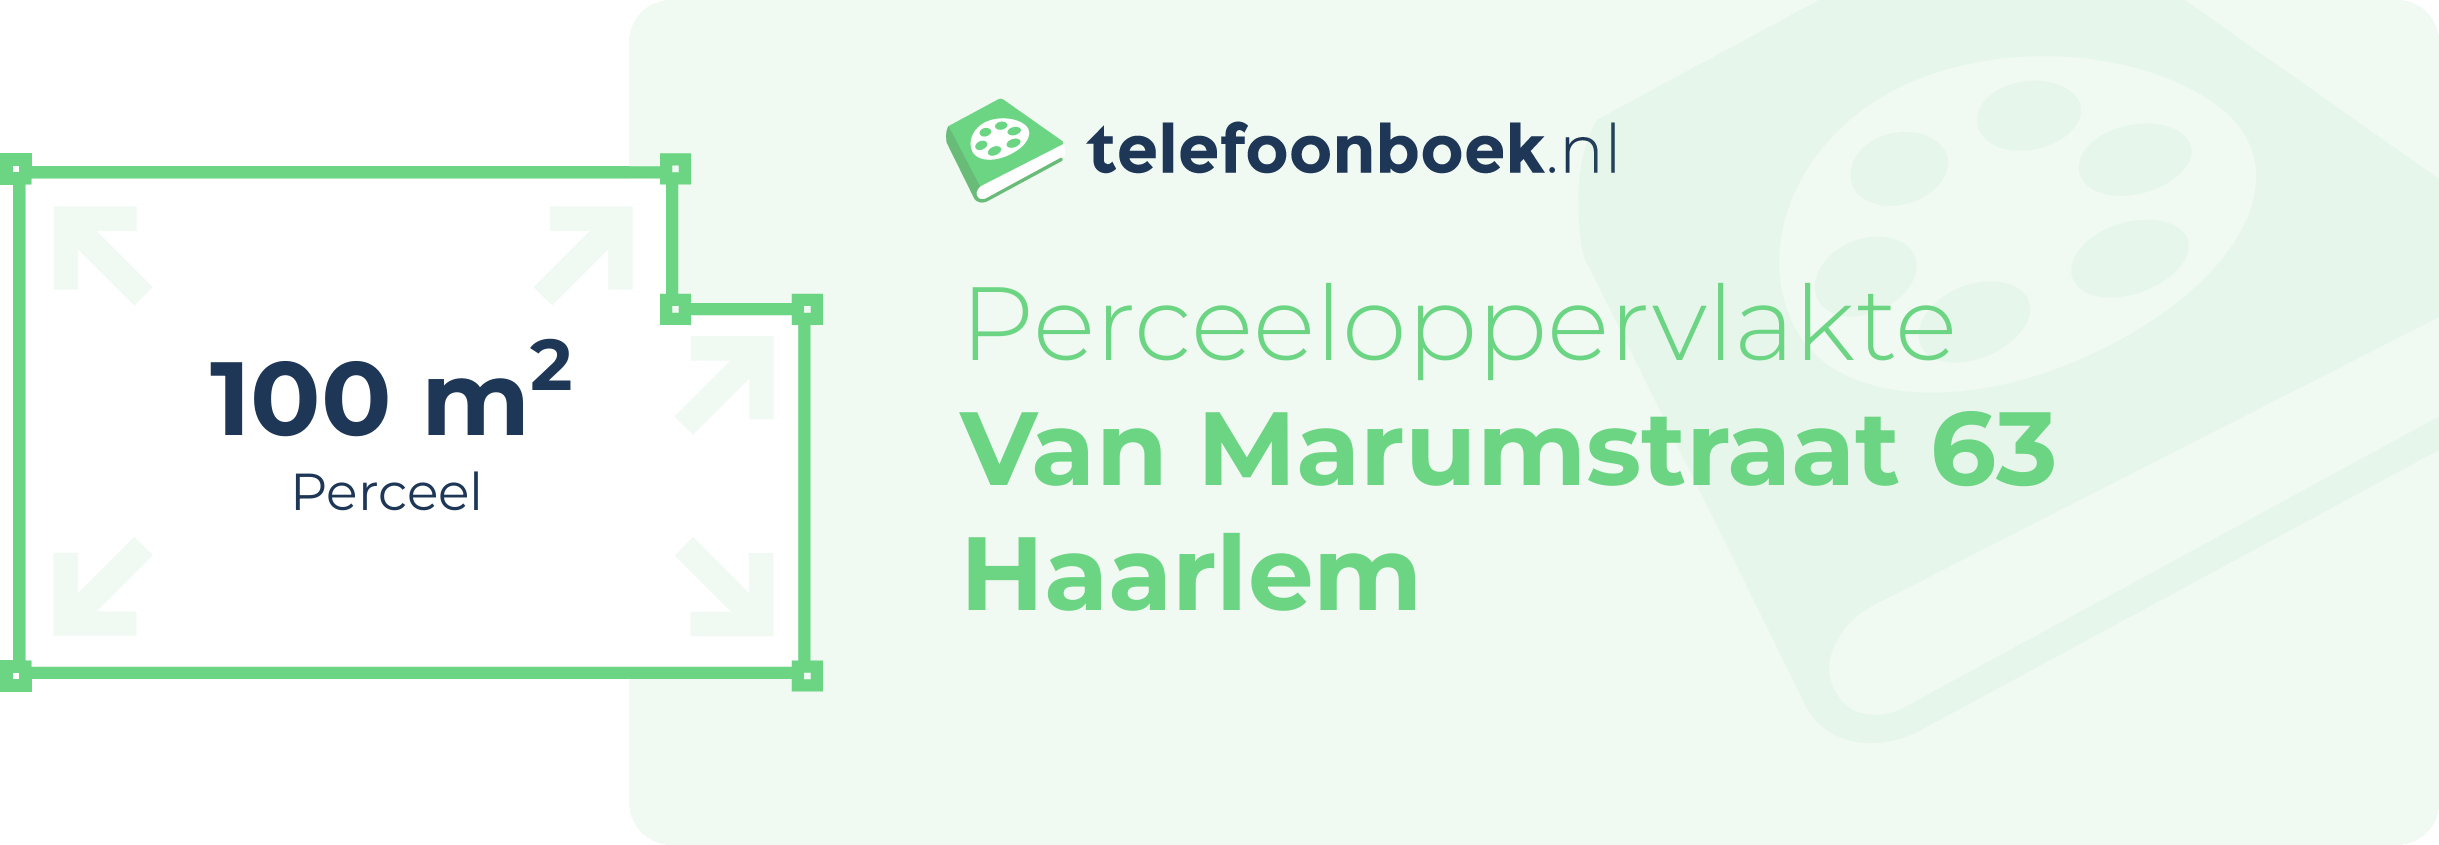 Perceeloppervlakte Van Marumstraat 63 Haarlem